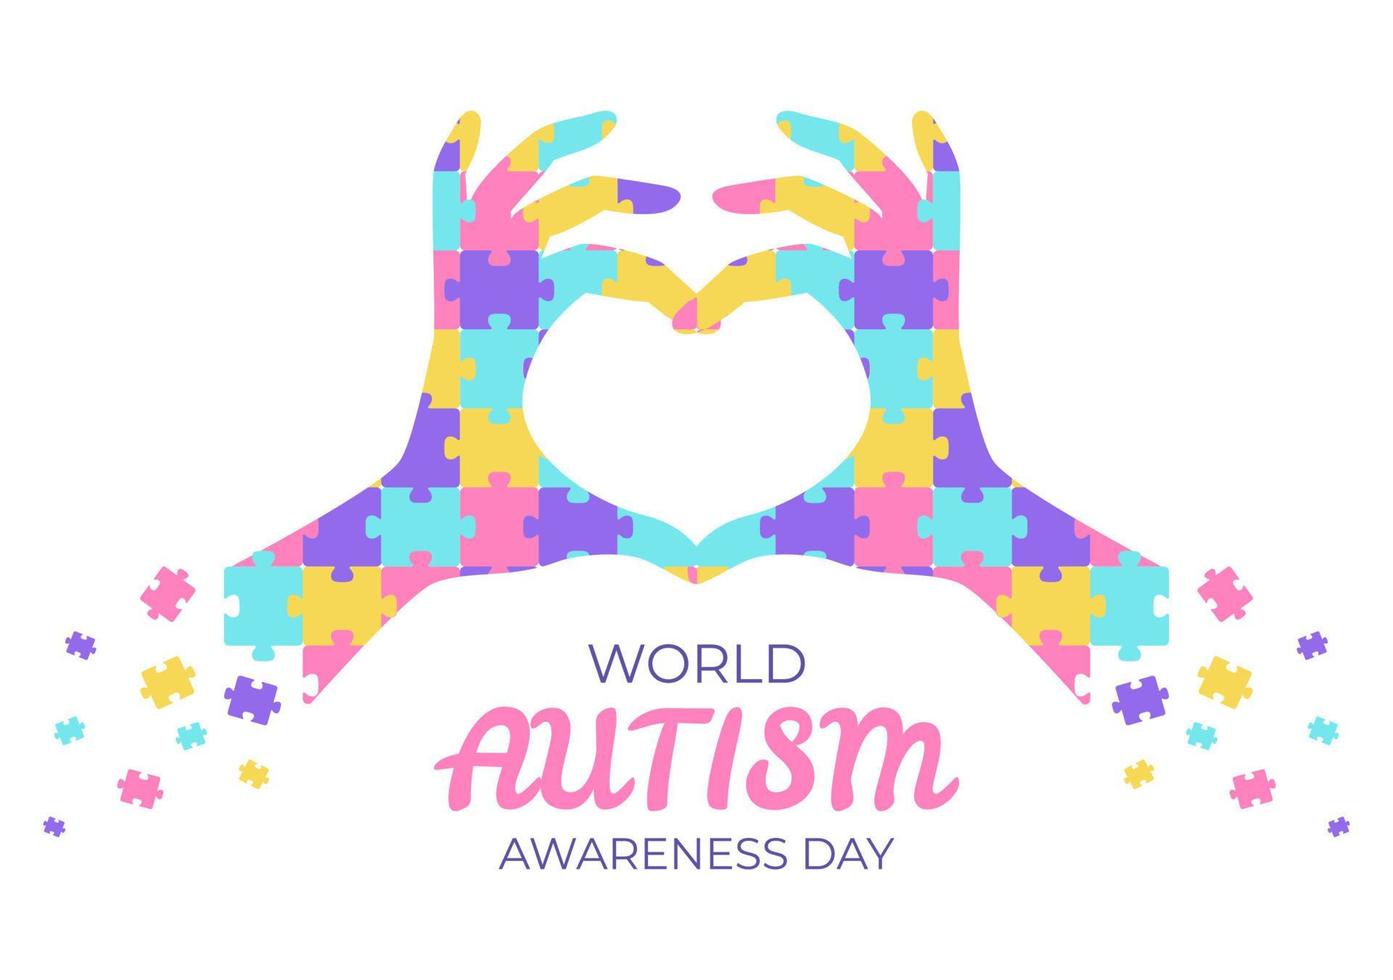 Día mundial de concientización sobre el autismo con piezas de mano y rompecabezas adecuadas para tarjetas de felicitación, carteles y pancartas en ilustraciones de diseño plano vector